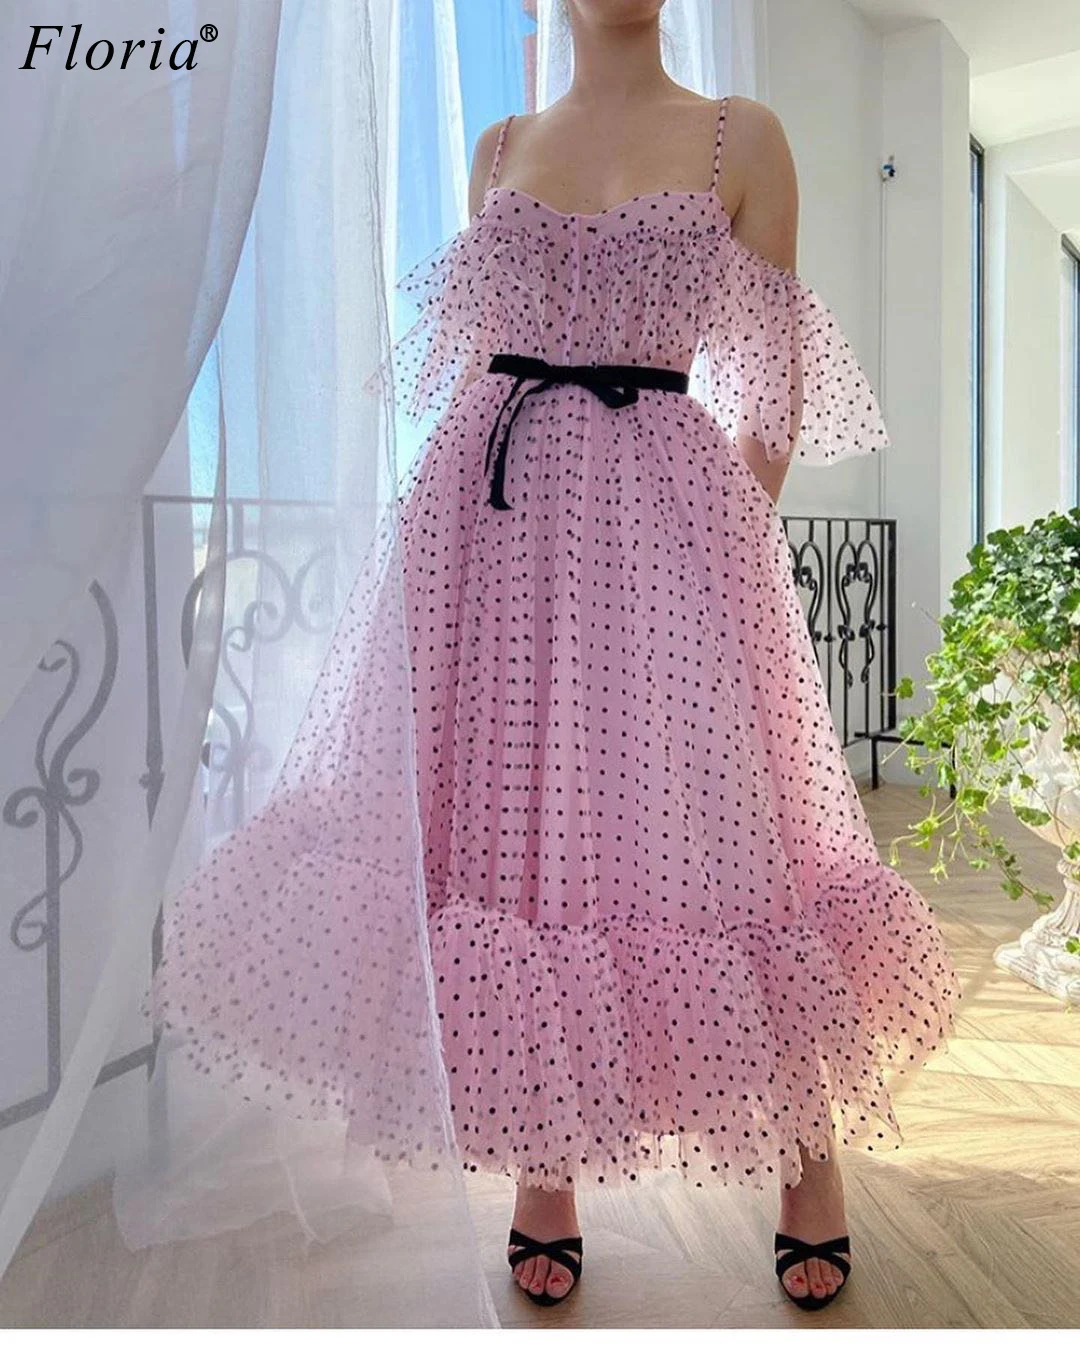 Фото Розовые платья знаменитостей от кутюр Kaftans коллекция 2020 года - купить